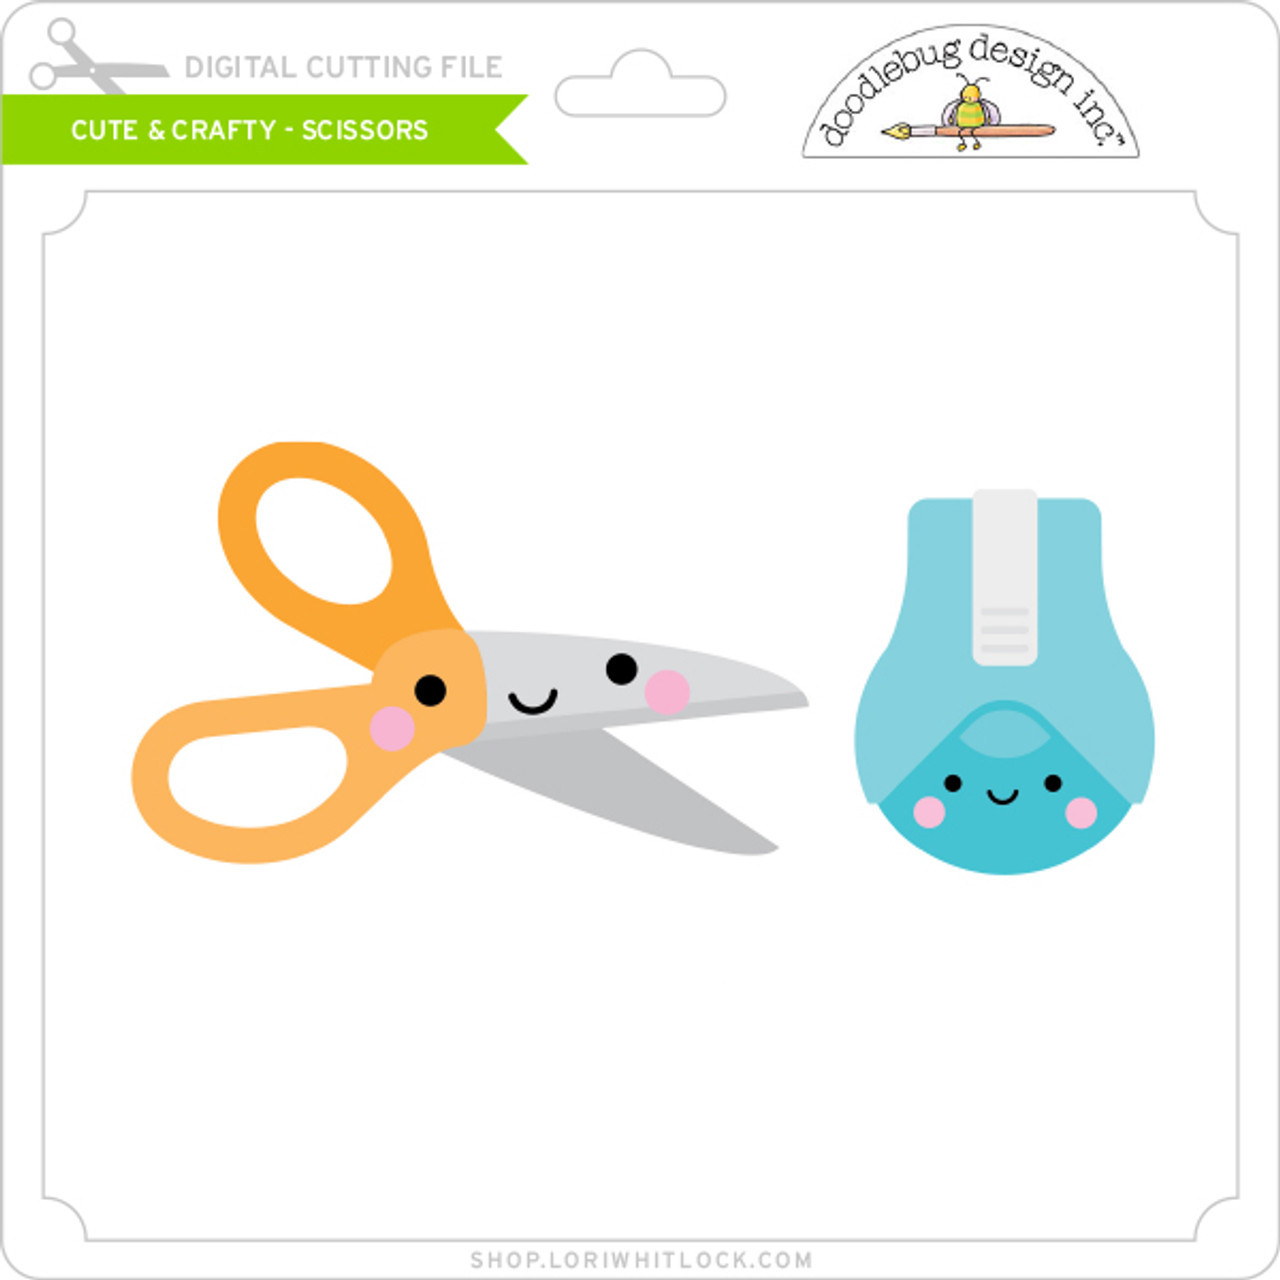 Cute & Crafty - Scissors